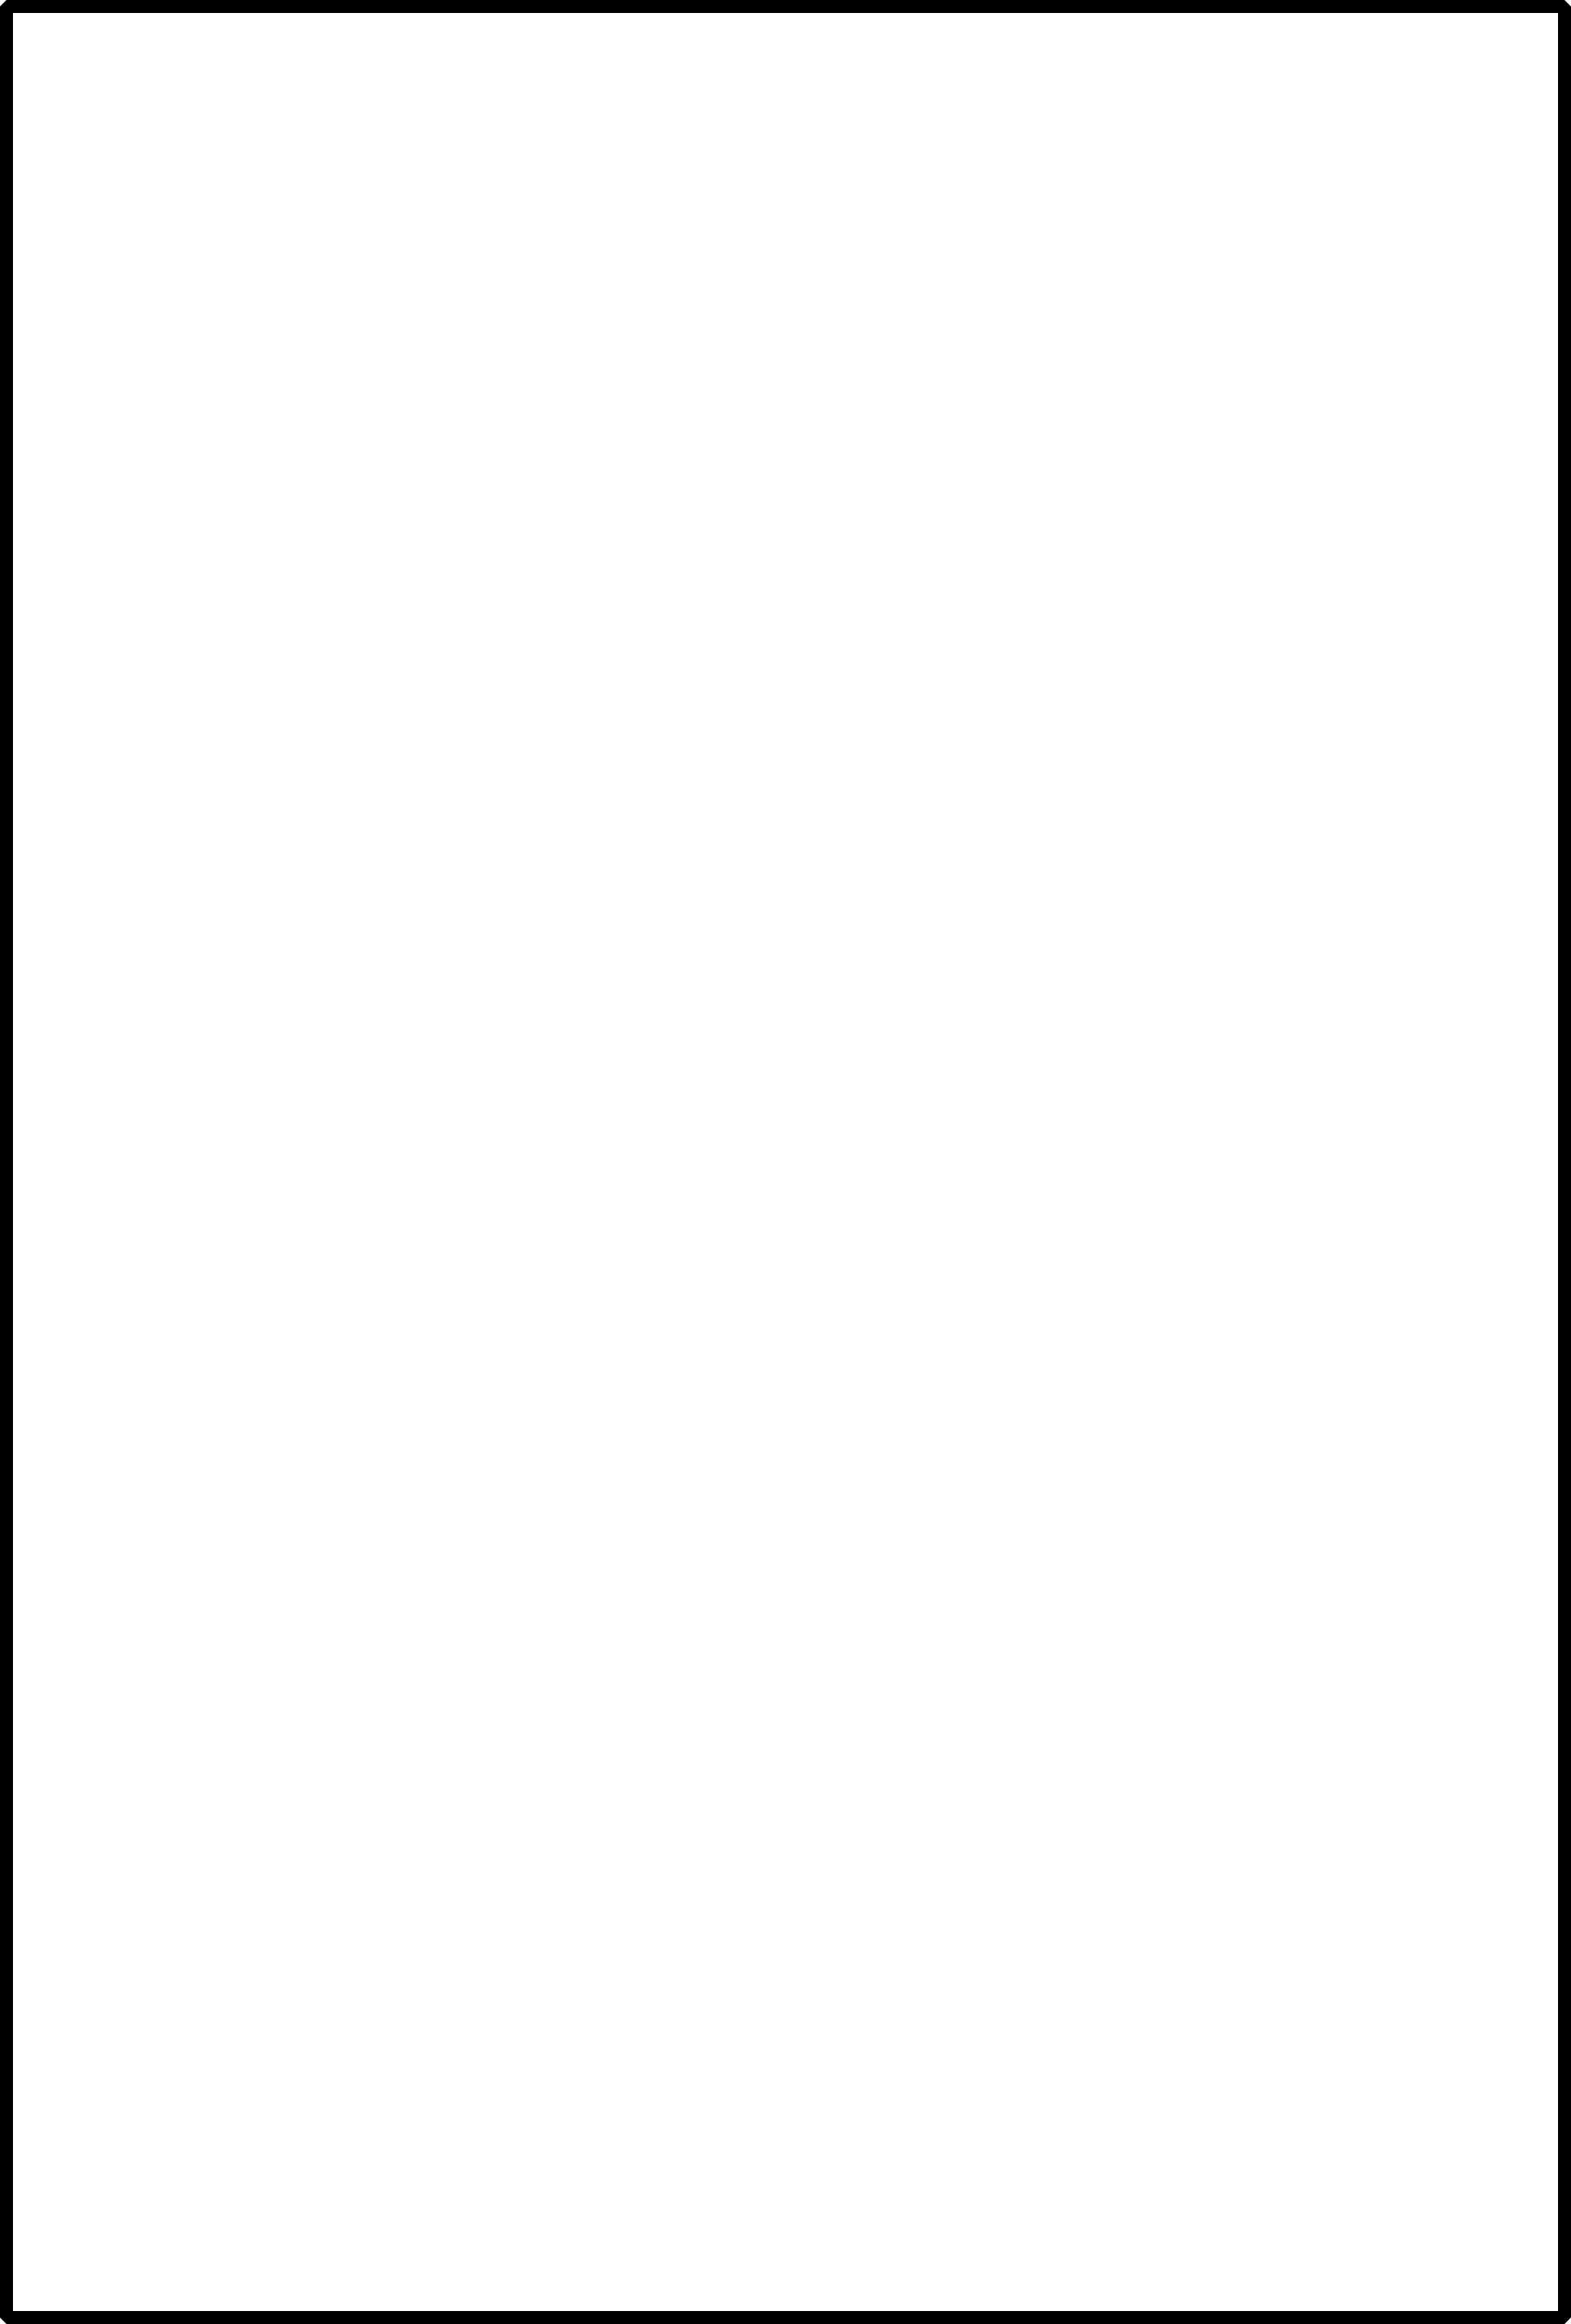 Immagine di alta qualità del rettangolo del bordo nero